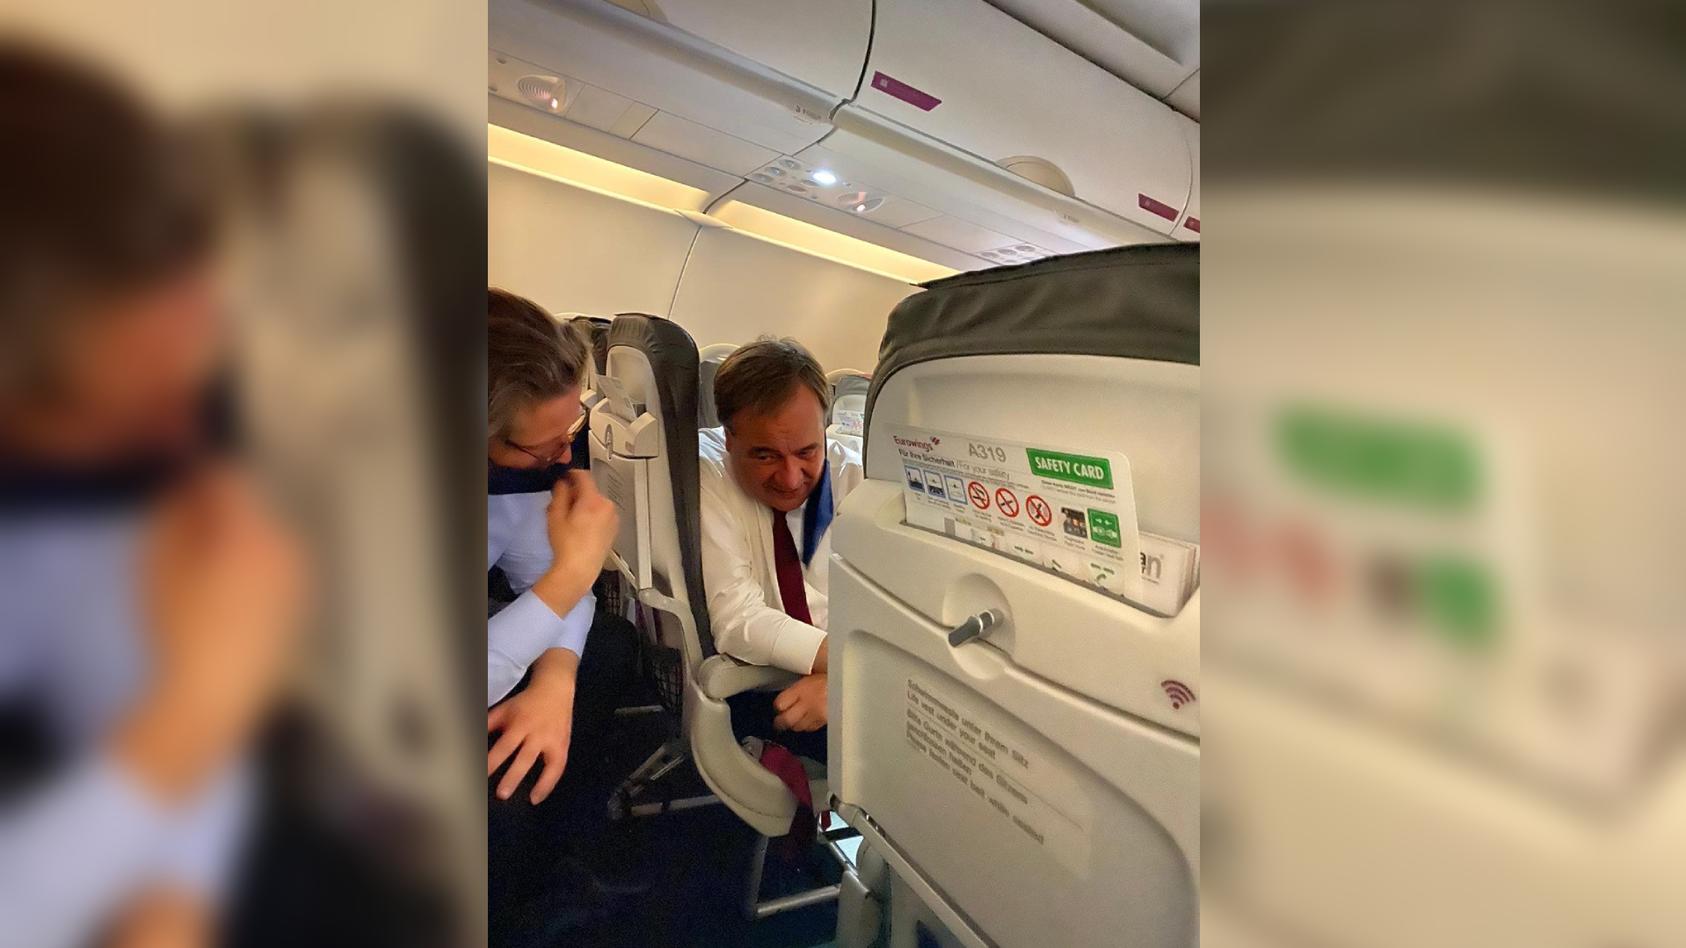 NRW-Ministerpräsident Armin Laschet in einem Flieger vom Flughafen Köln/Bonn nach Berlin - auf dem Bild hat er den Mund-Nasen-Schutz nicht übergezogen.